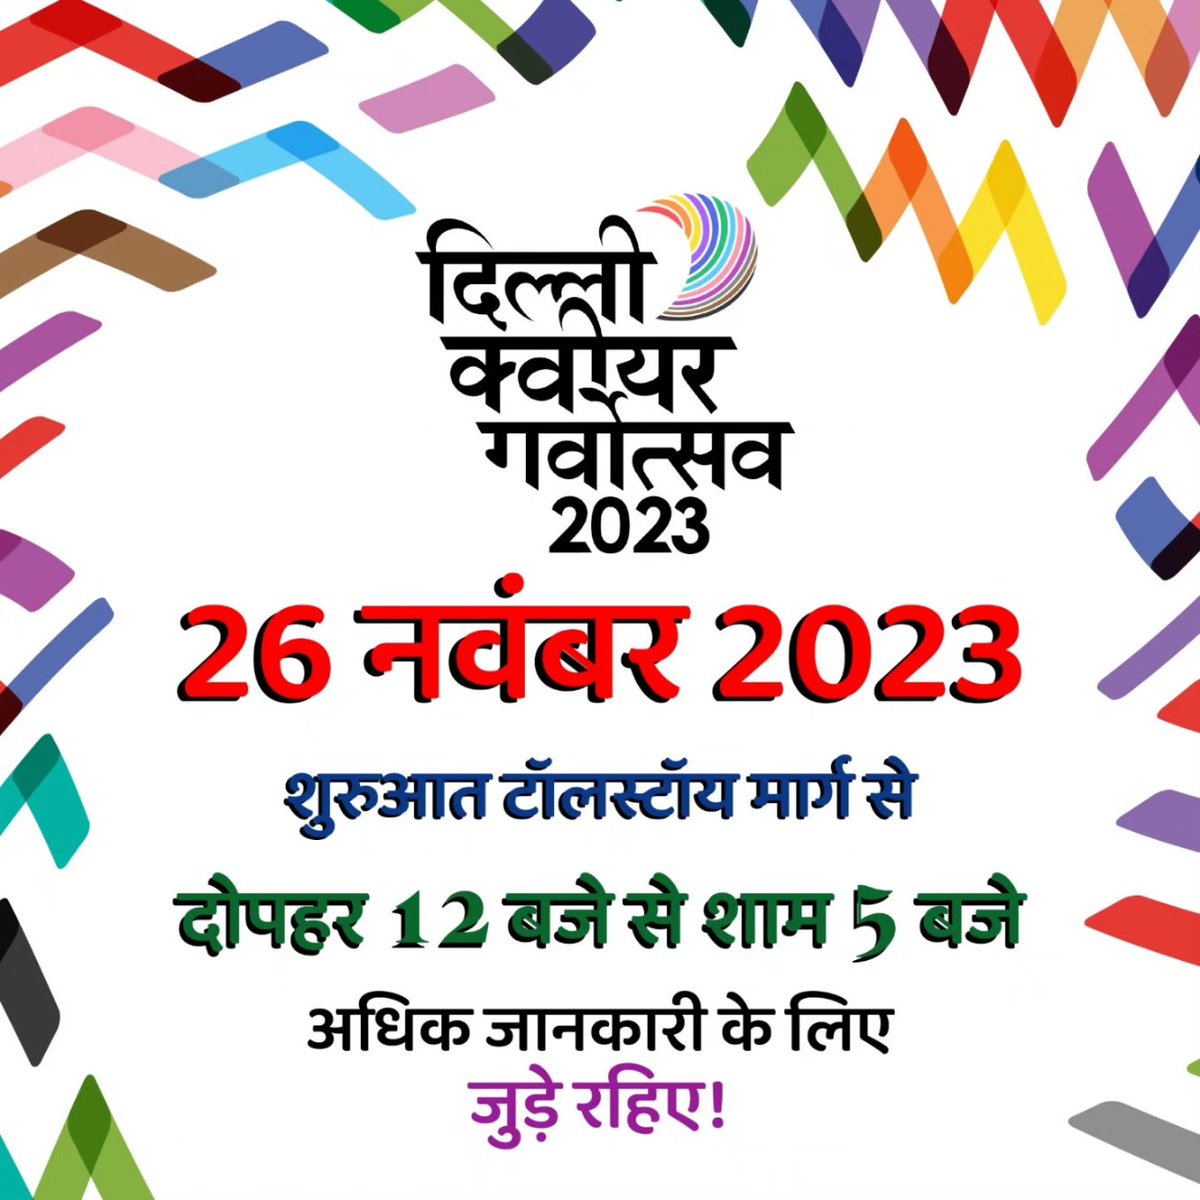 Delhi get your Pride Flags out. See you on the 26th दिल्ली वासियों अपने प्राइड के झंडे तयार रखो। २६ नवंबर को मिलते हैं।